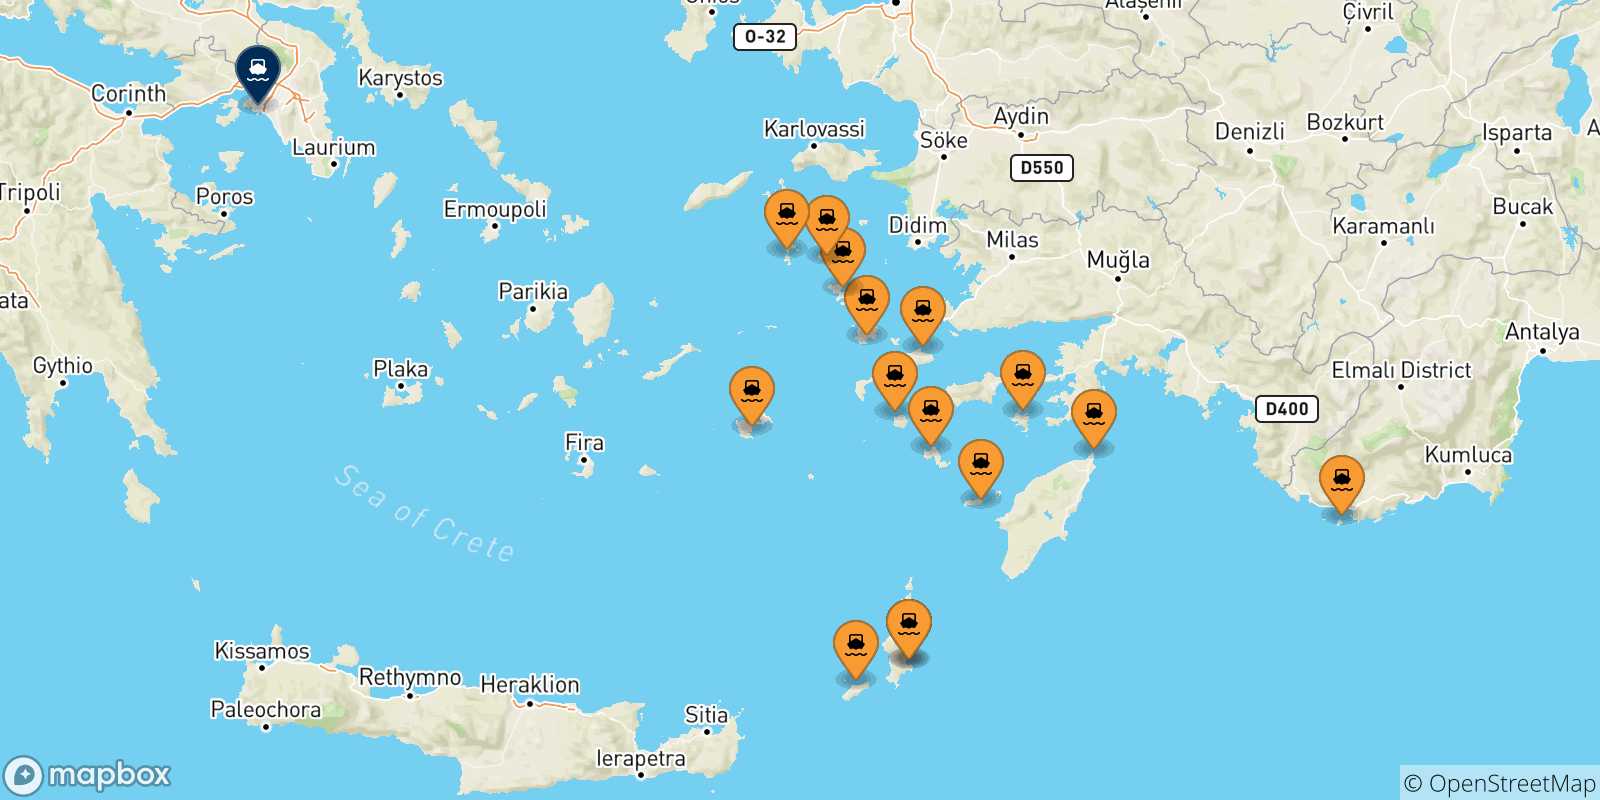 Mappa delle possibili rotte tra le Isole Dodecaneso e Pireo